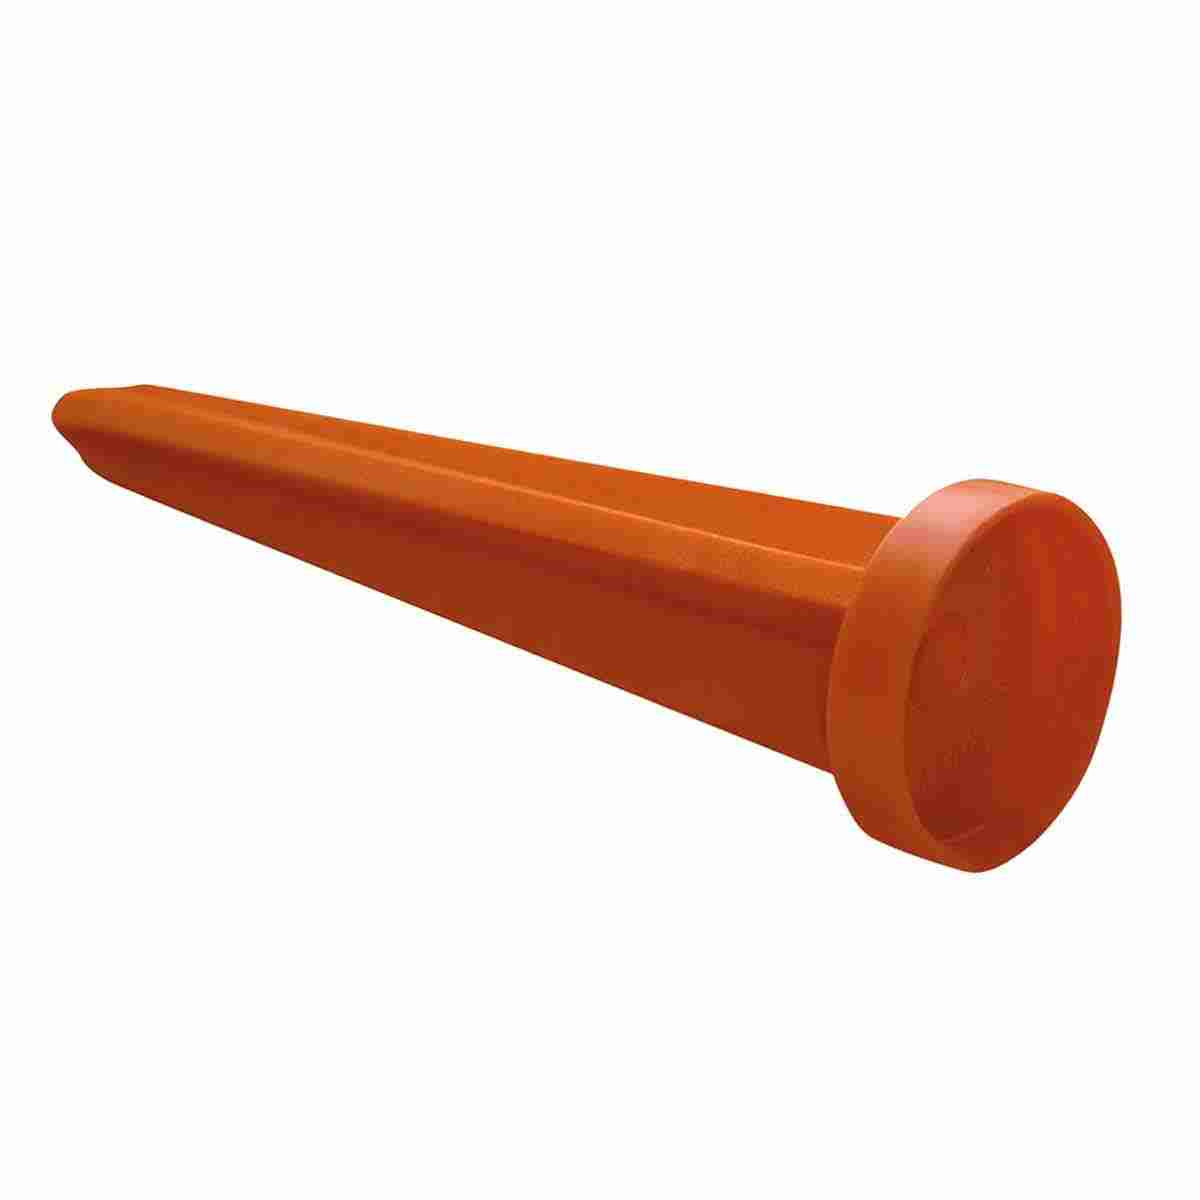 Plastikkegel, Länge: 120 mm - mit Rand, orange, Aufschrift: Messpunkt